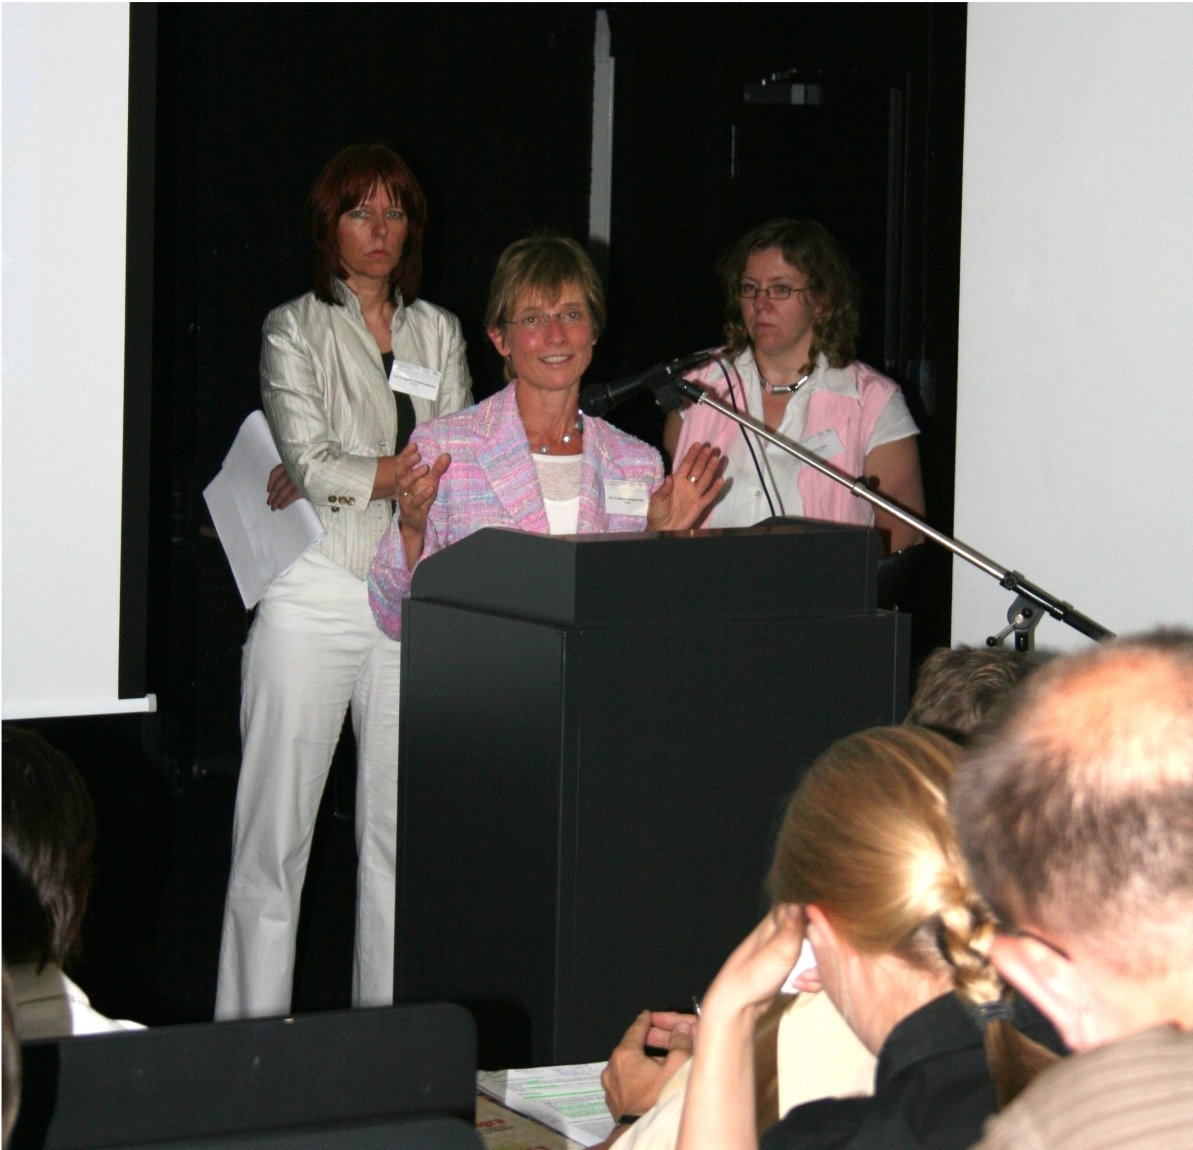 Prof. Dr. Angelika Schmidt-Koddenberg, Prof. Dr. Marianne Geneger-Stricker und Dipl. Soz.-Päd. Susanne Antunes auf der ProMigra Tagung 2007 (Markus Lahrmann)